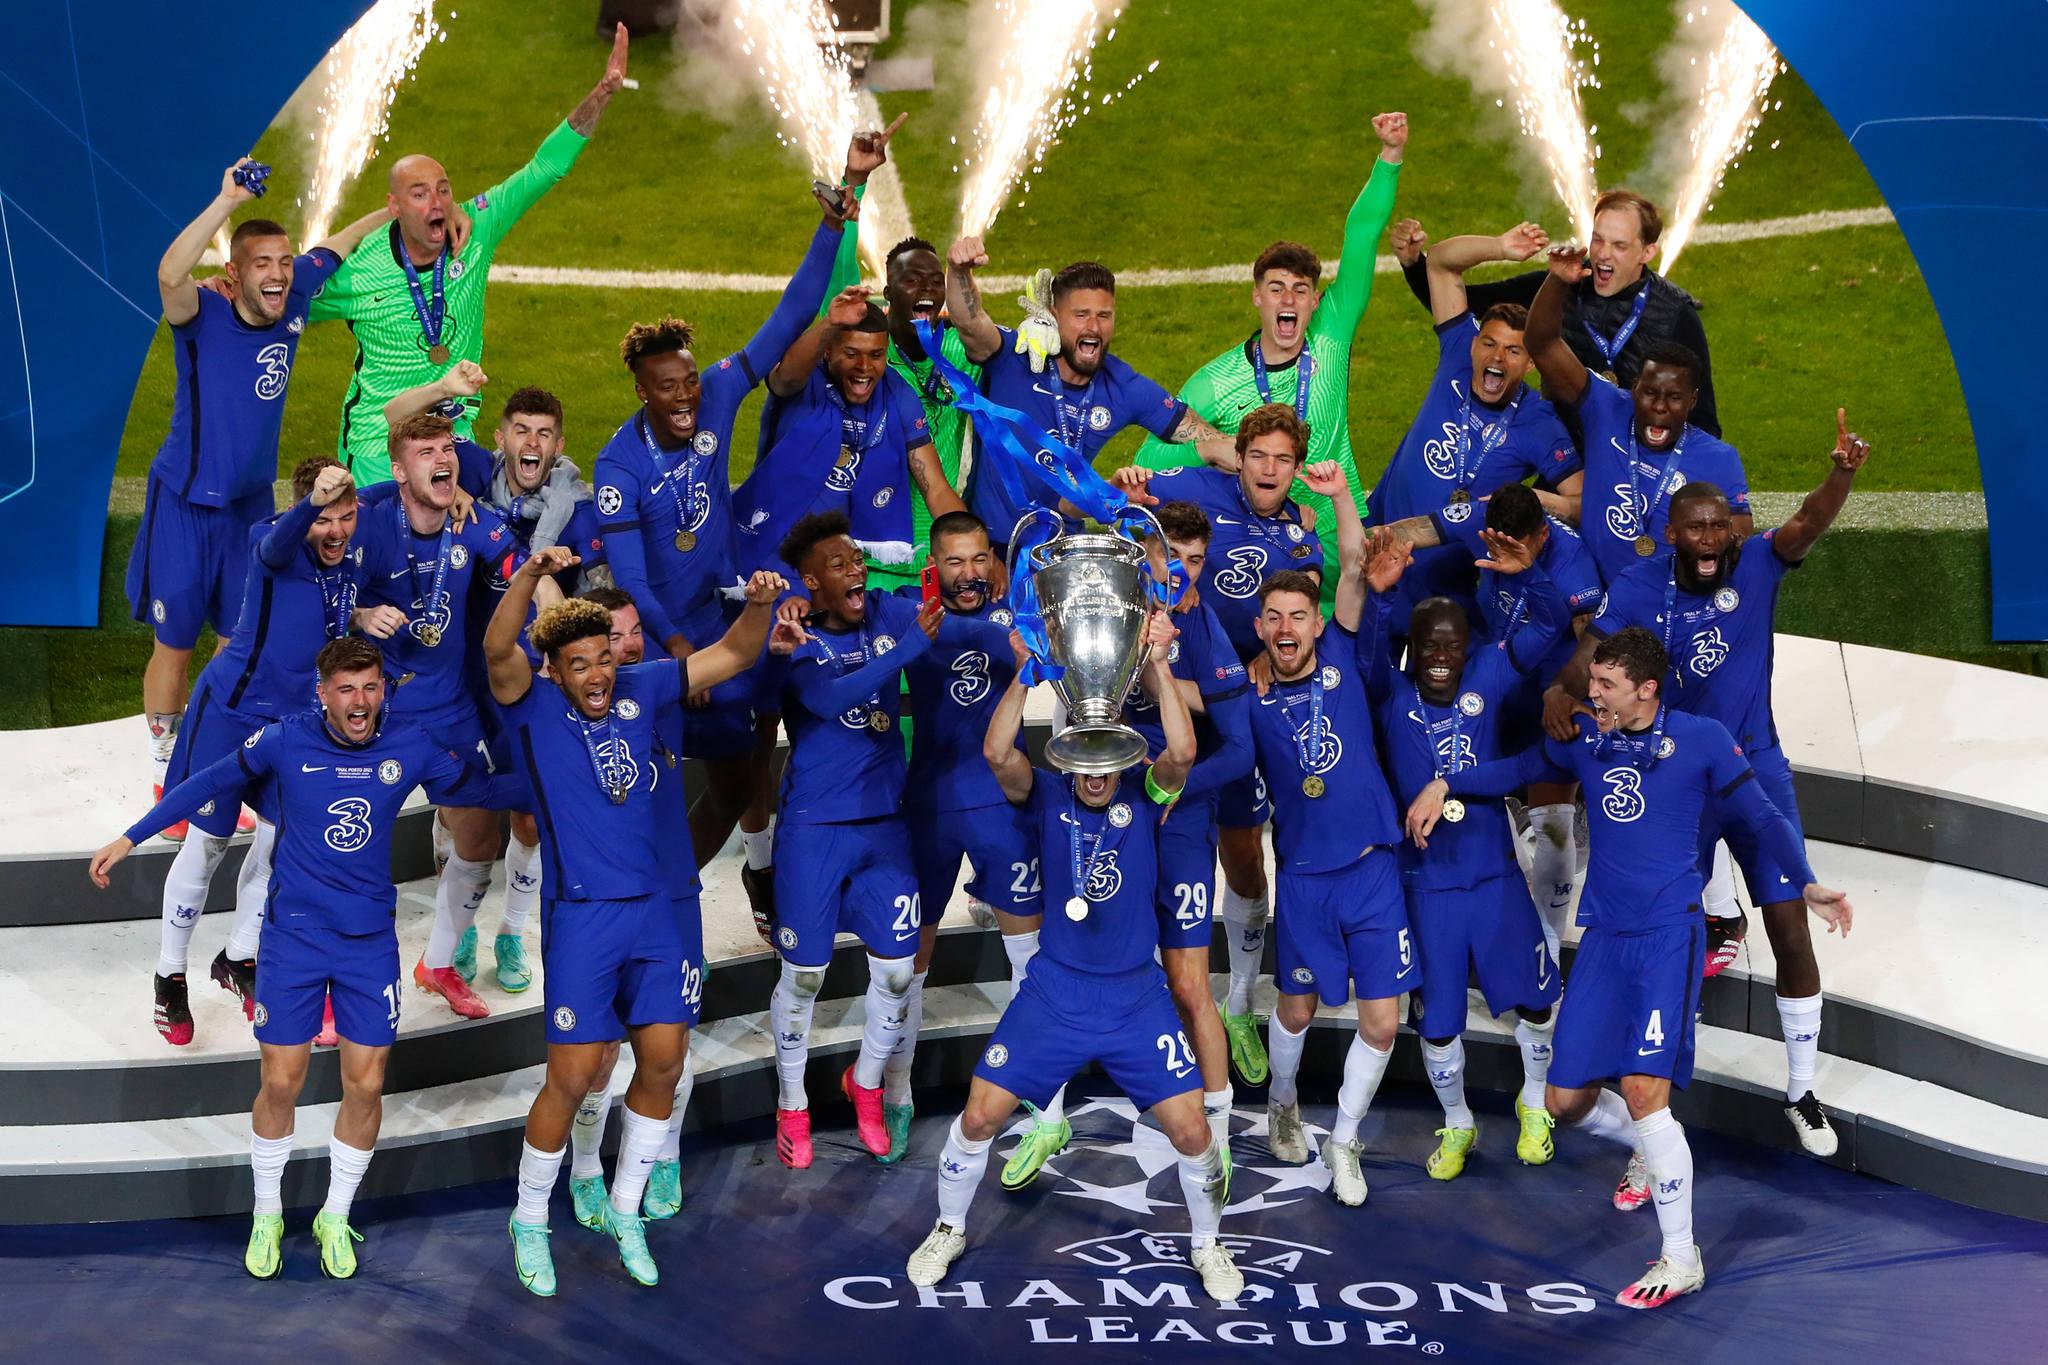 Manchester City 0 x 1 Chelsea  Liga dos Campeões: melhores momentos